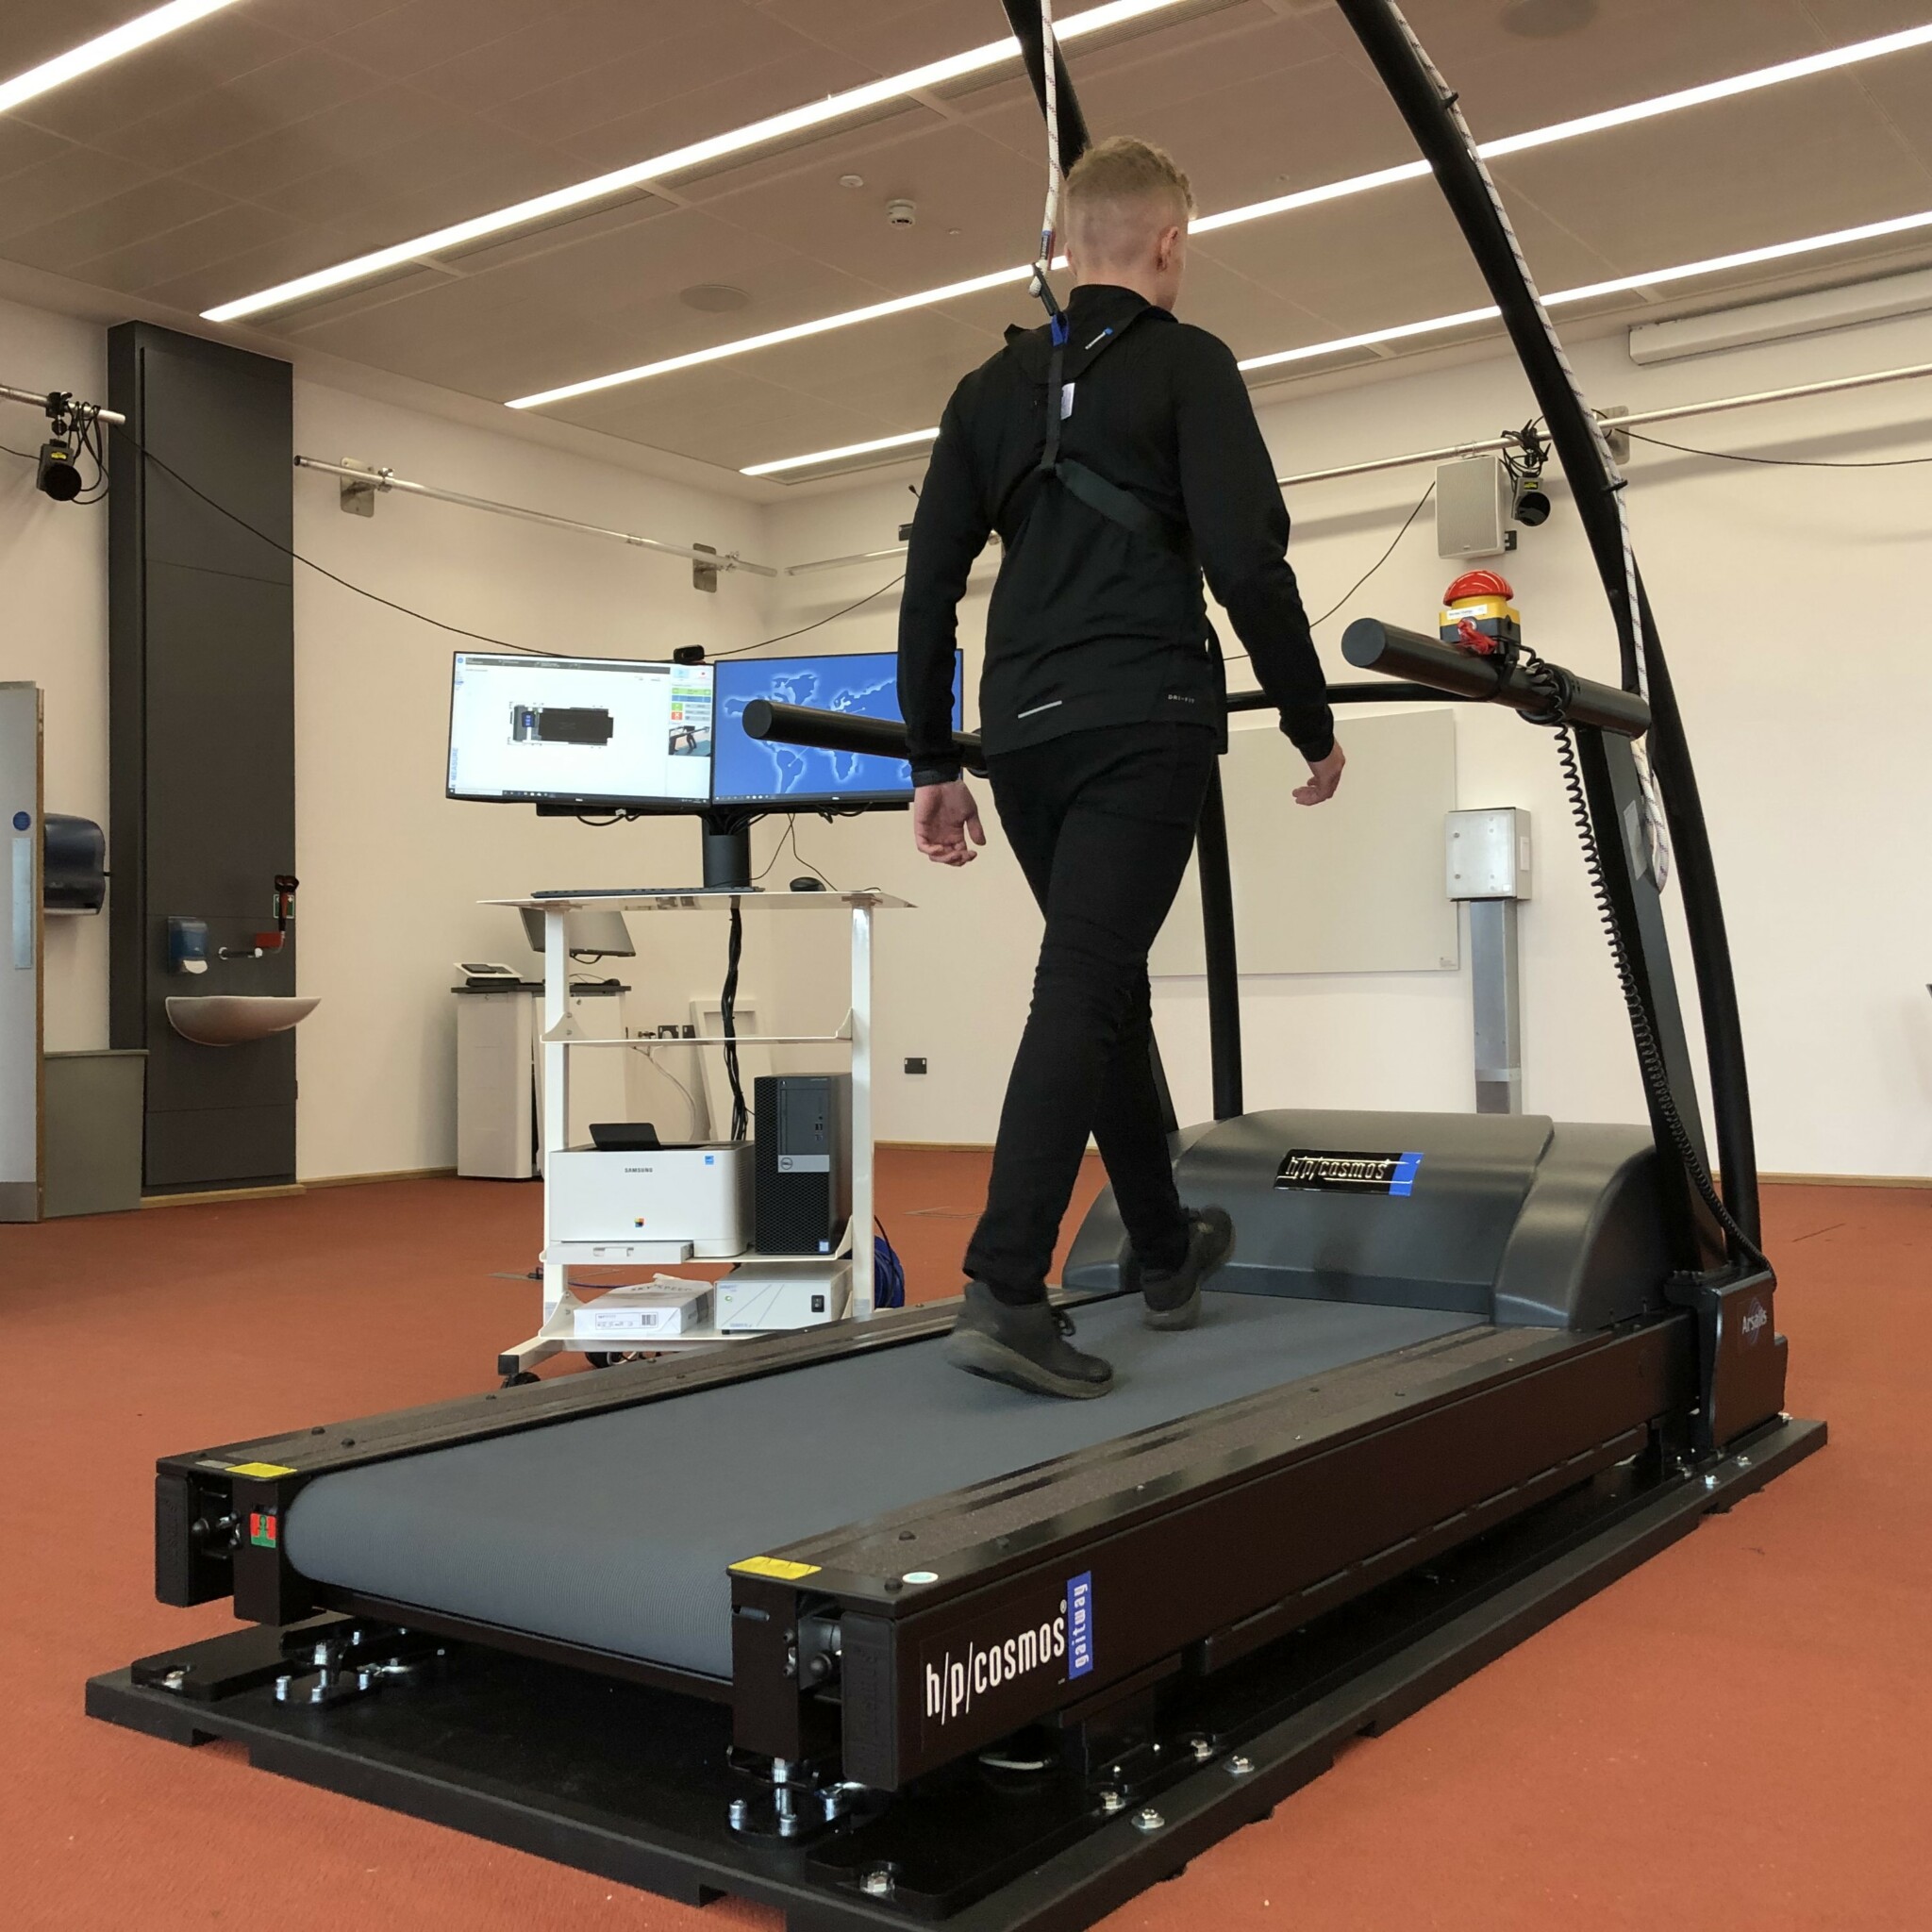 instrumented treadmill application